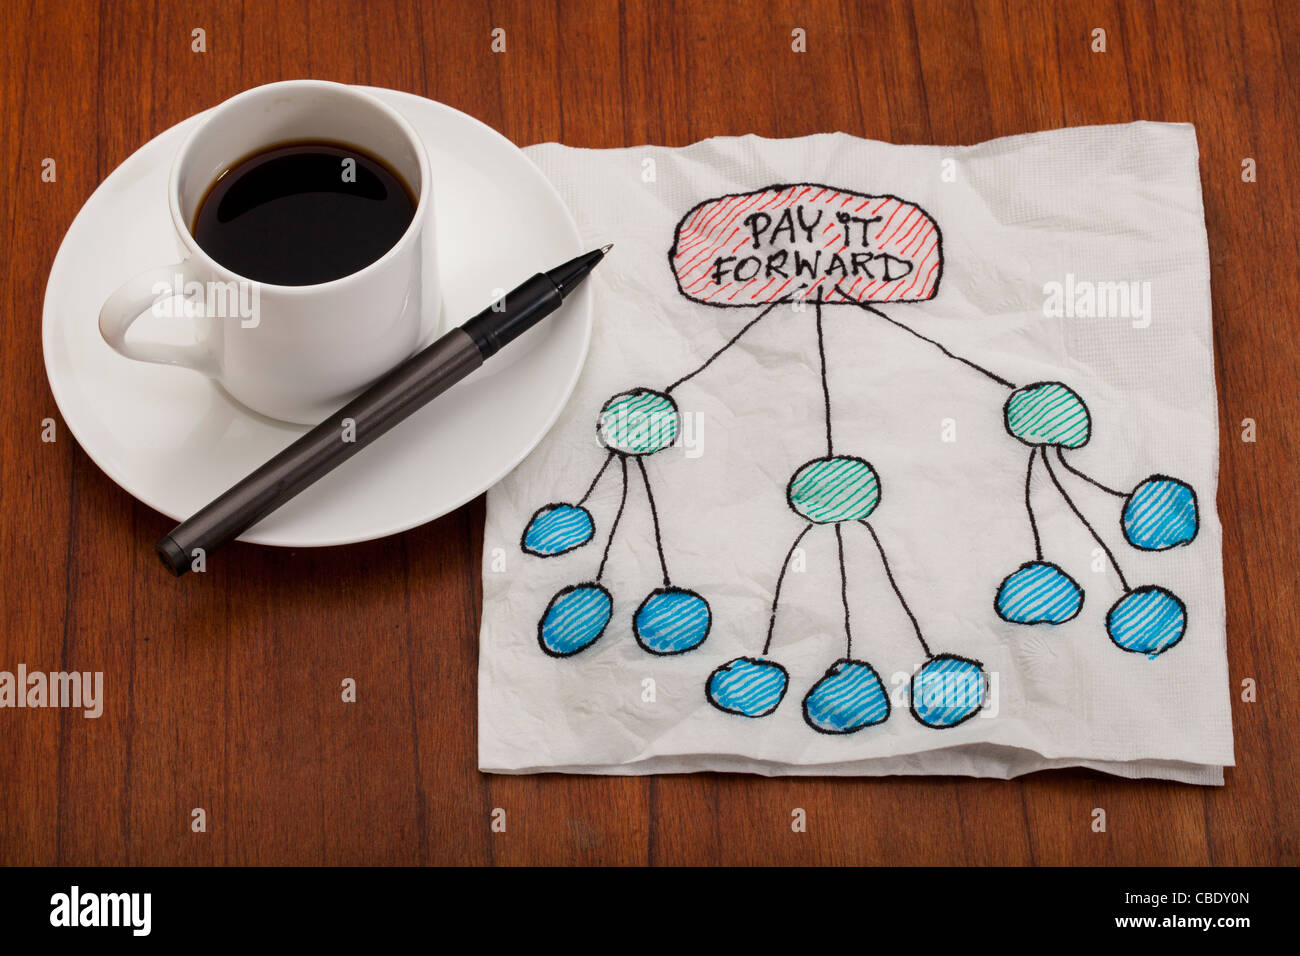 Payez au suivant concept illustré sur la serviette blanche avec la tasse de café espresso sur table Banque D'Images